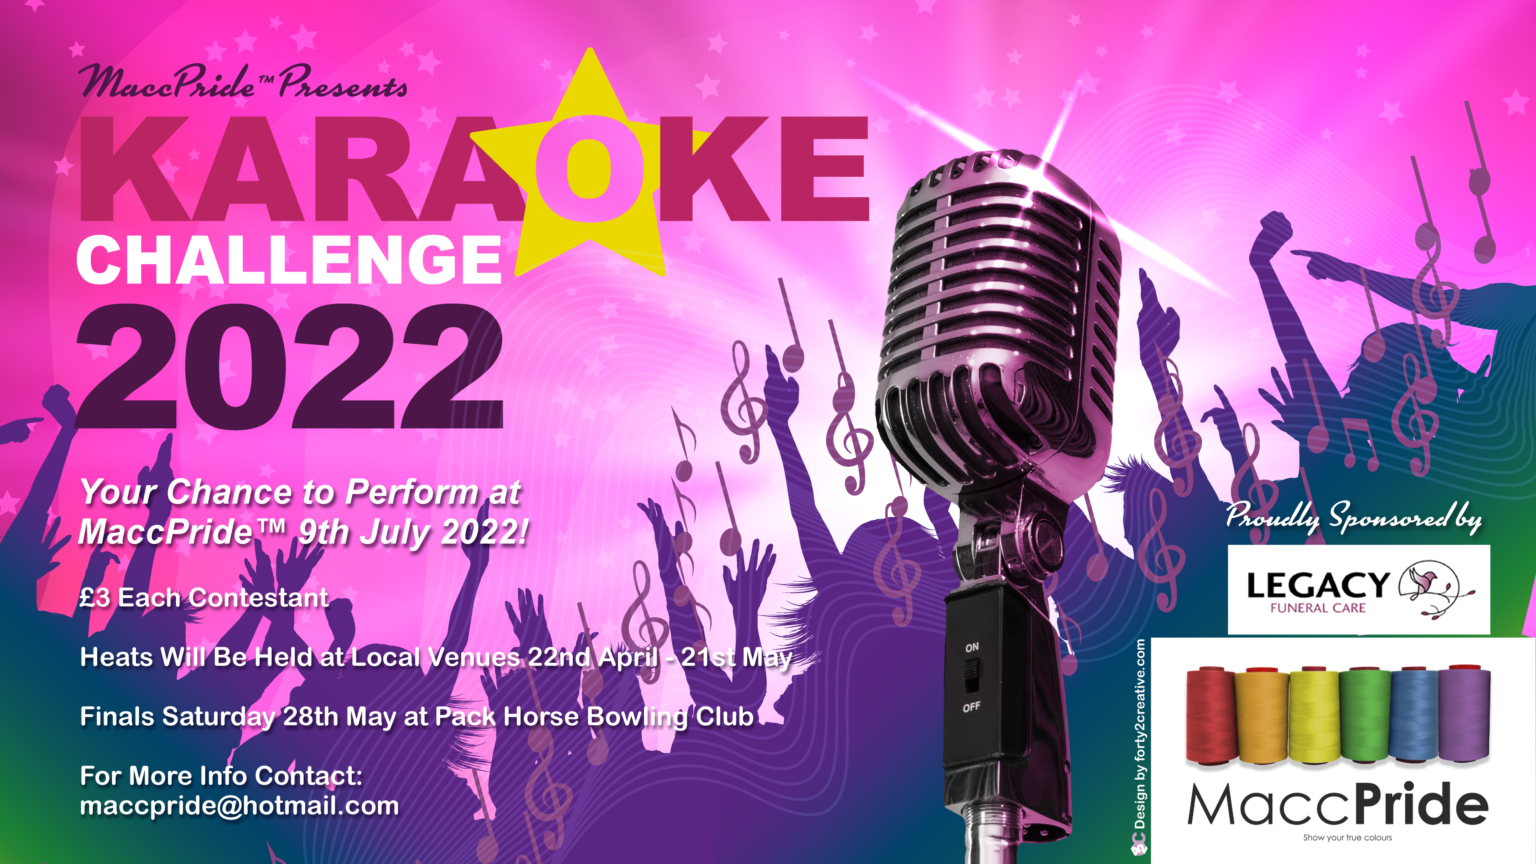 MaccPride Karaoke Challenge 2022 Winner 5 MaccPride Pride in